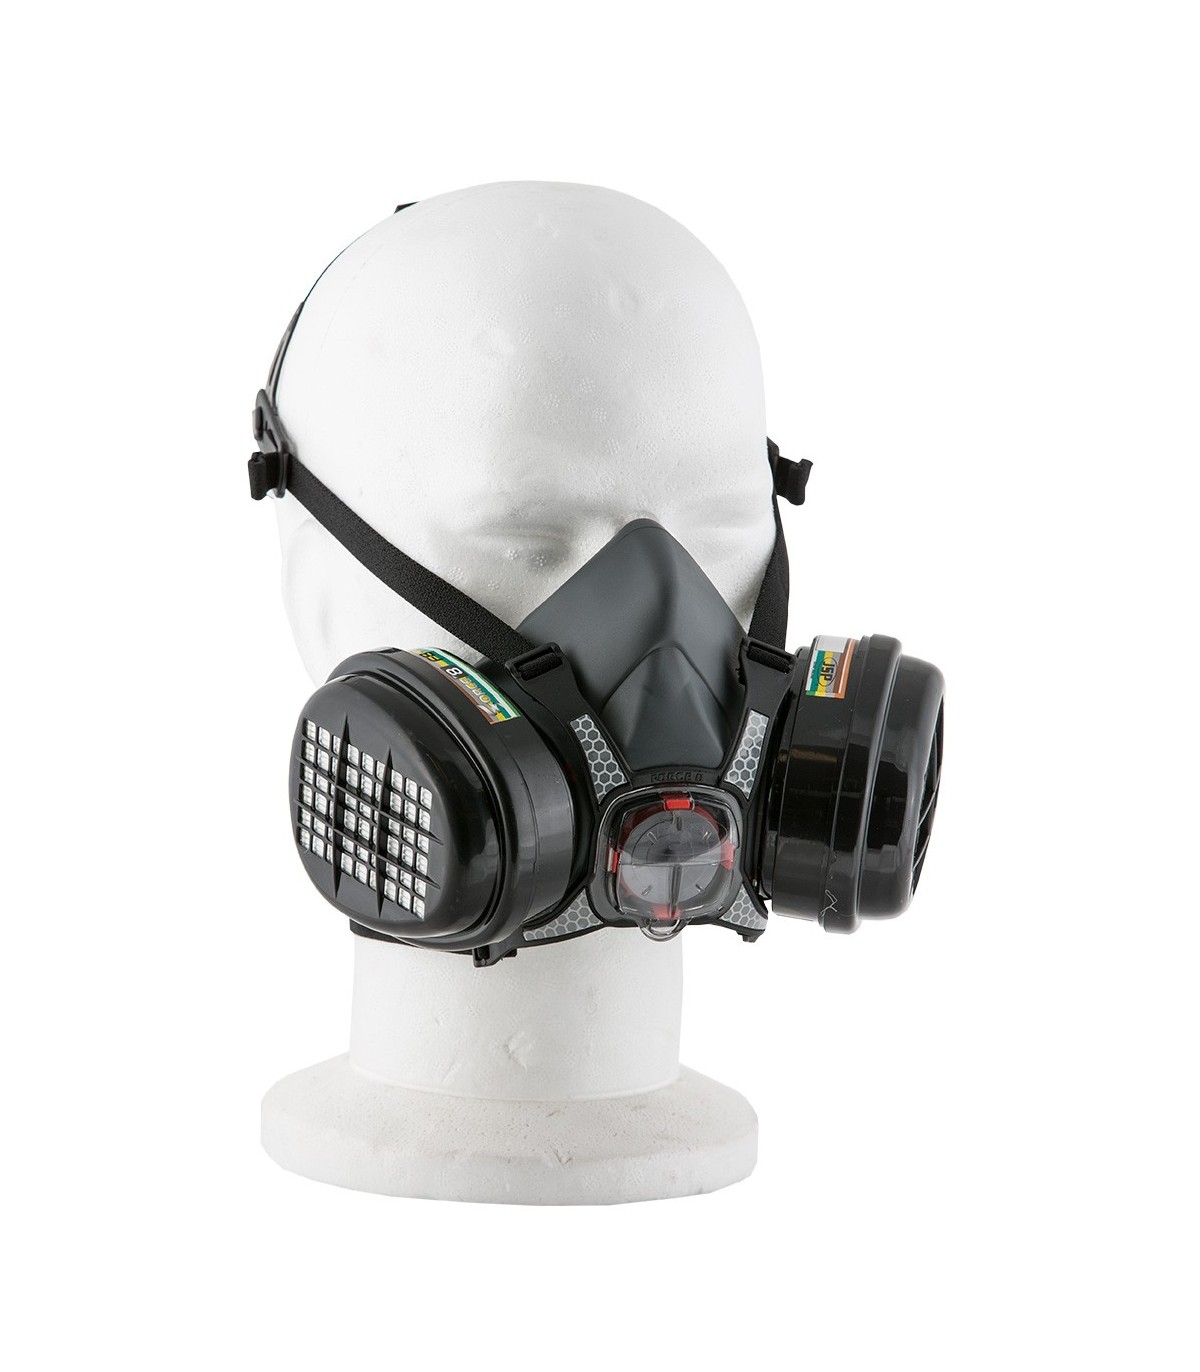 Masque respiratoire avec filtres ABEK1P3R Force 8 taille M cartouches